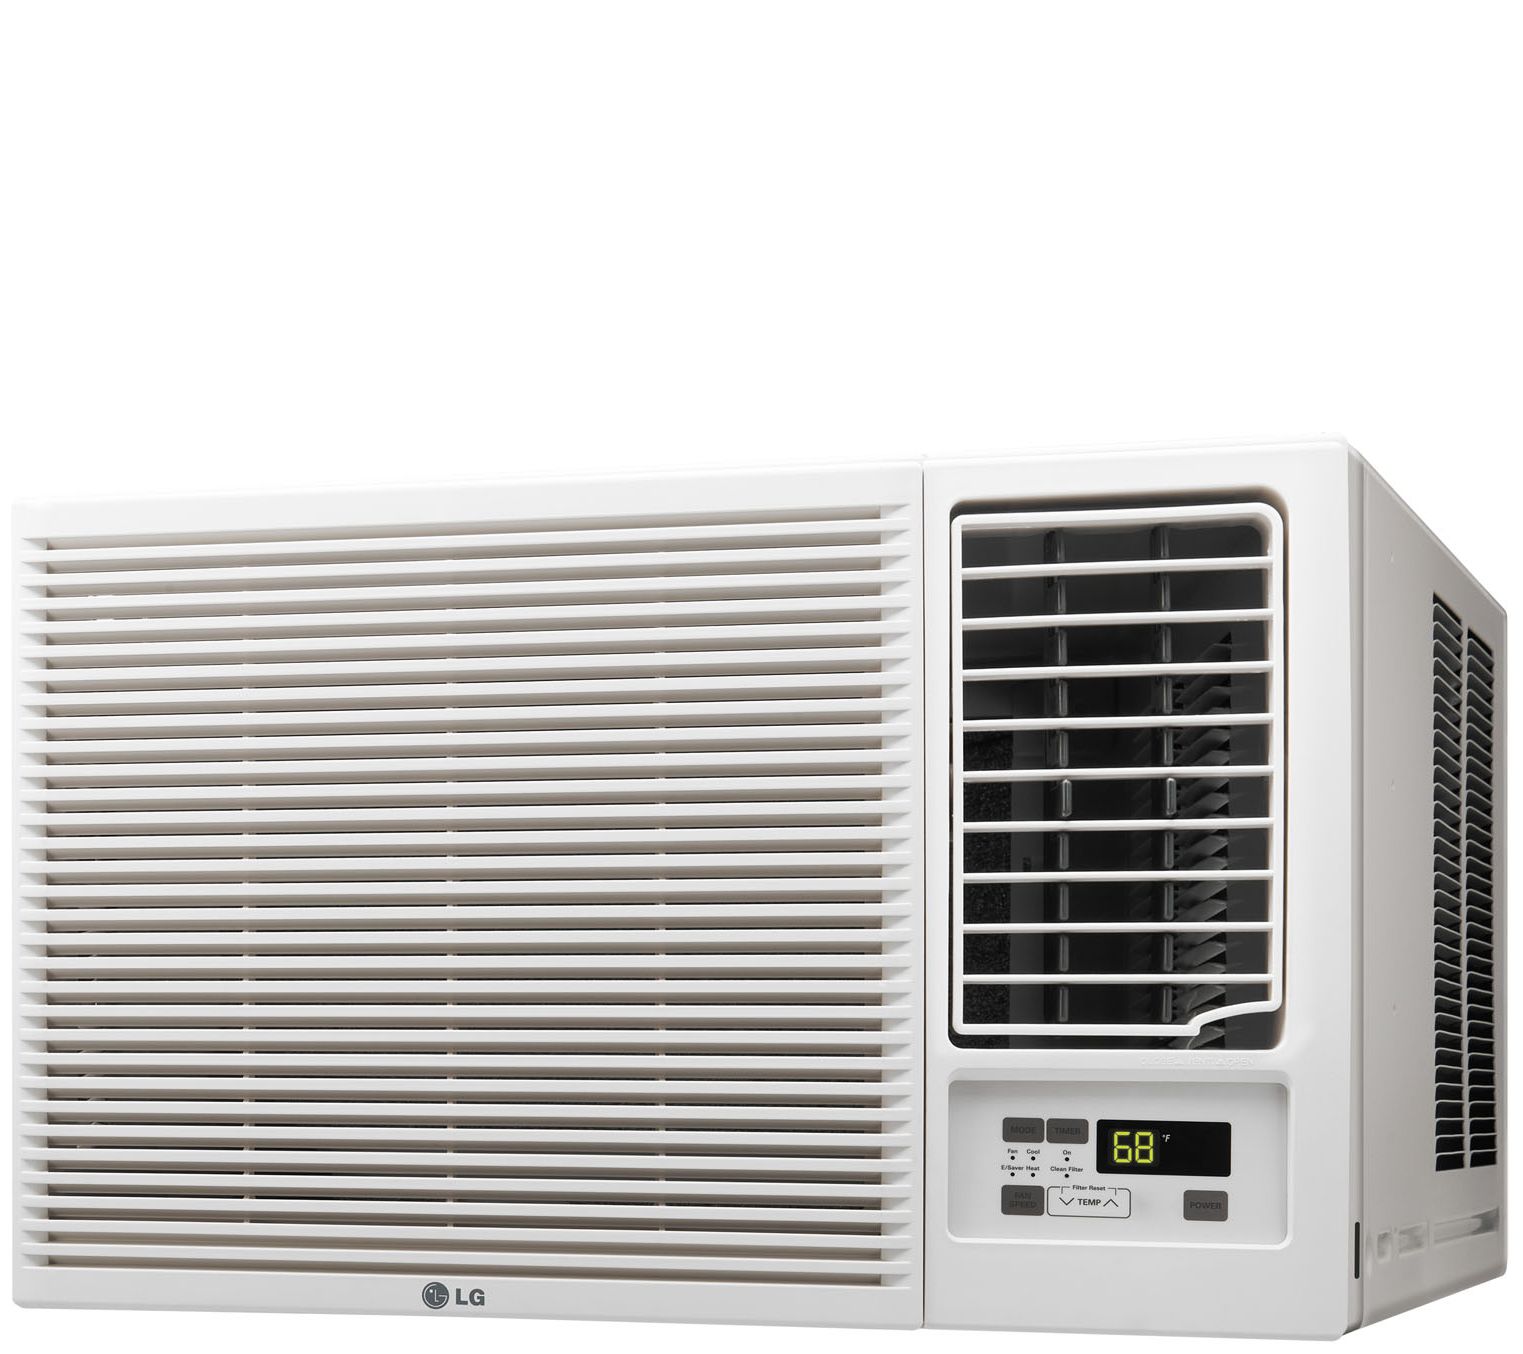 Btu air conditioner with heat